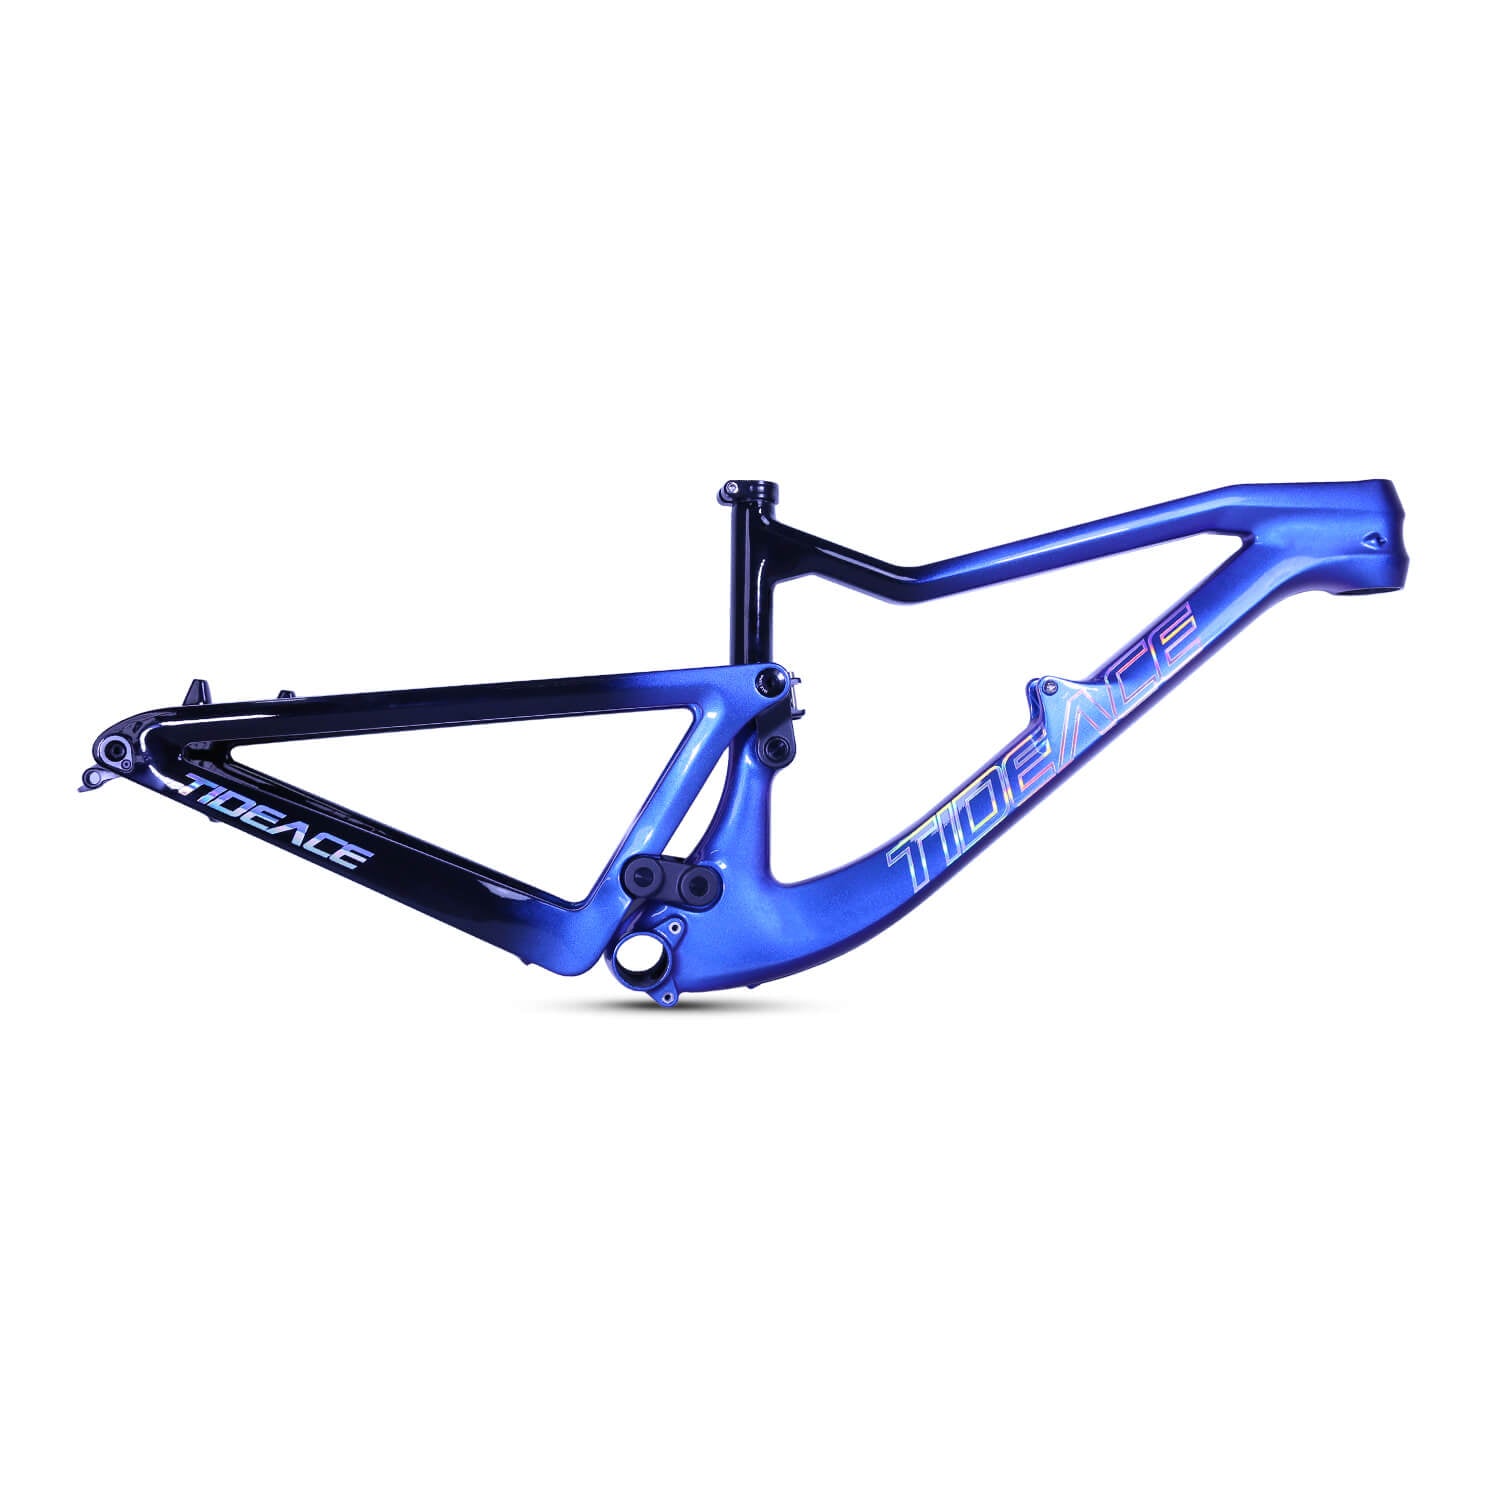 29er carbon enduro full suspension mountain bike frame chameleon color